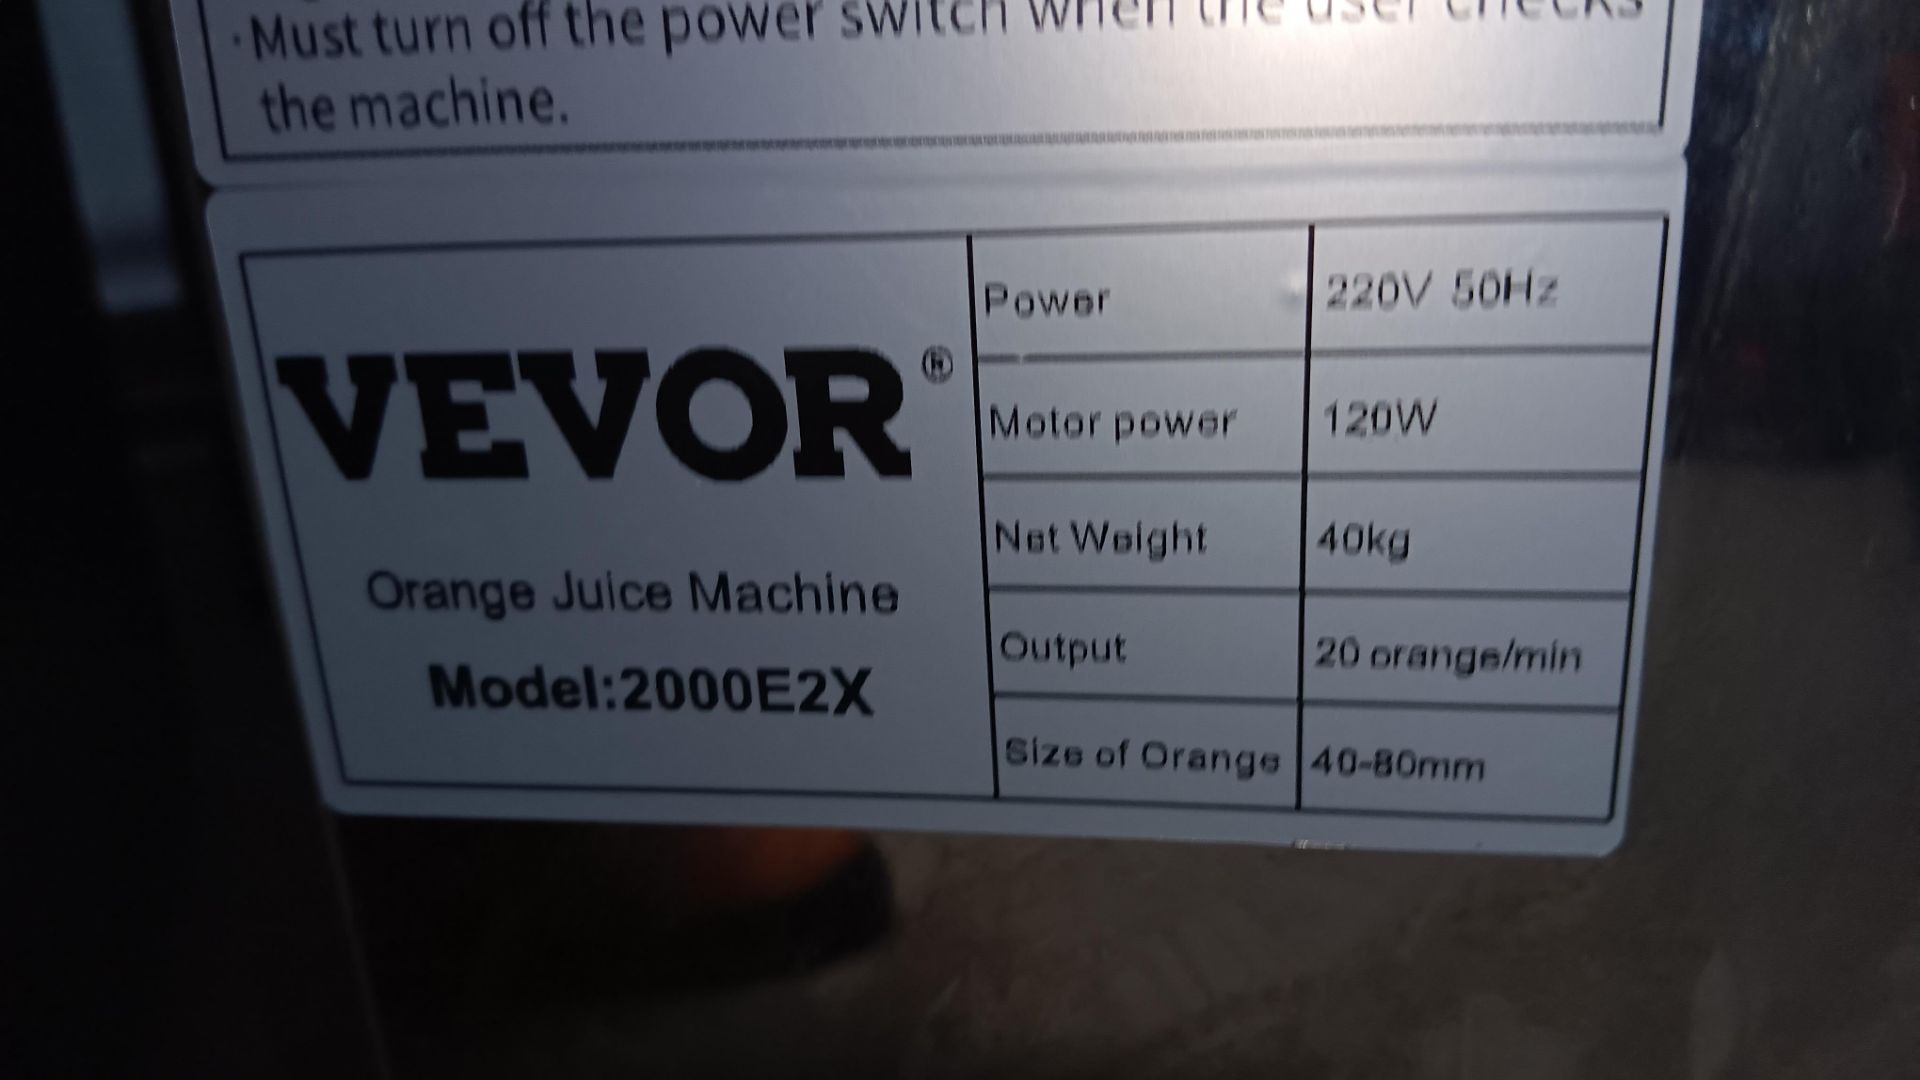 Vevor 2000E2X Commercial Orange juicer machine - Image 5 of 5